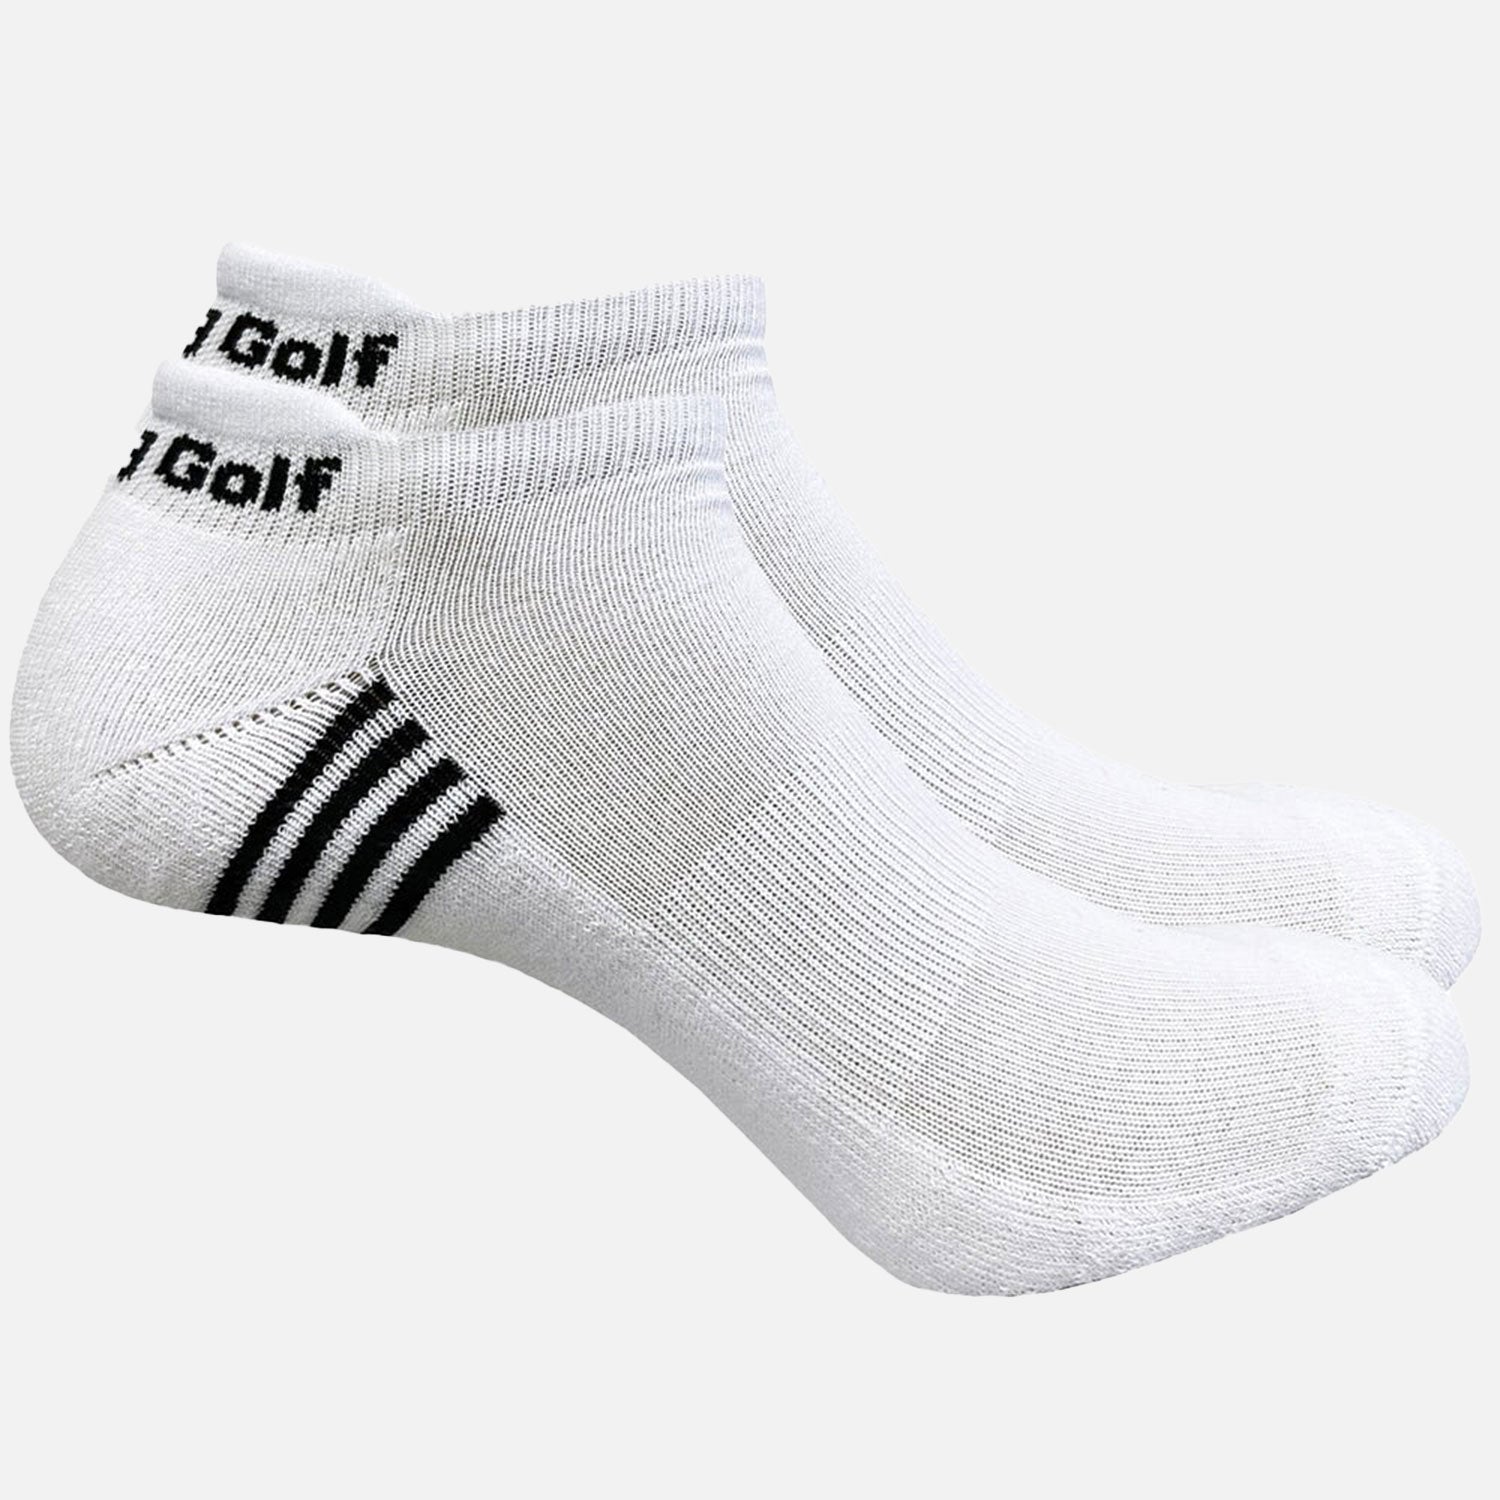 F. King Golf Socks